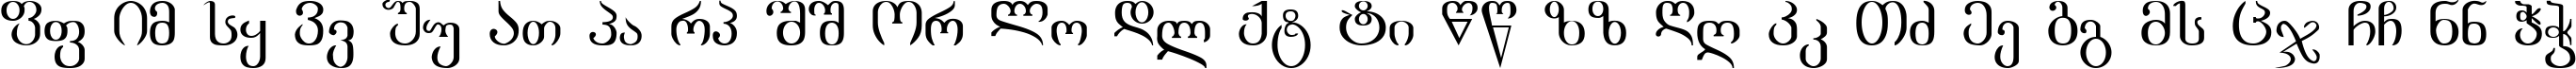 Пример написания английского алфавита шрифтом acad